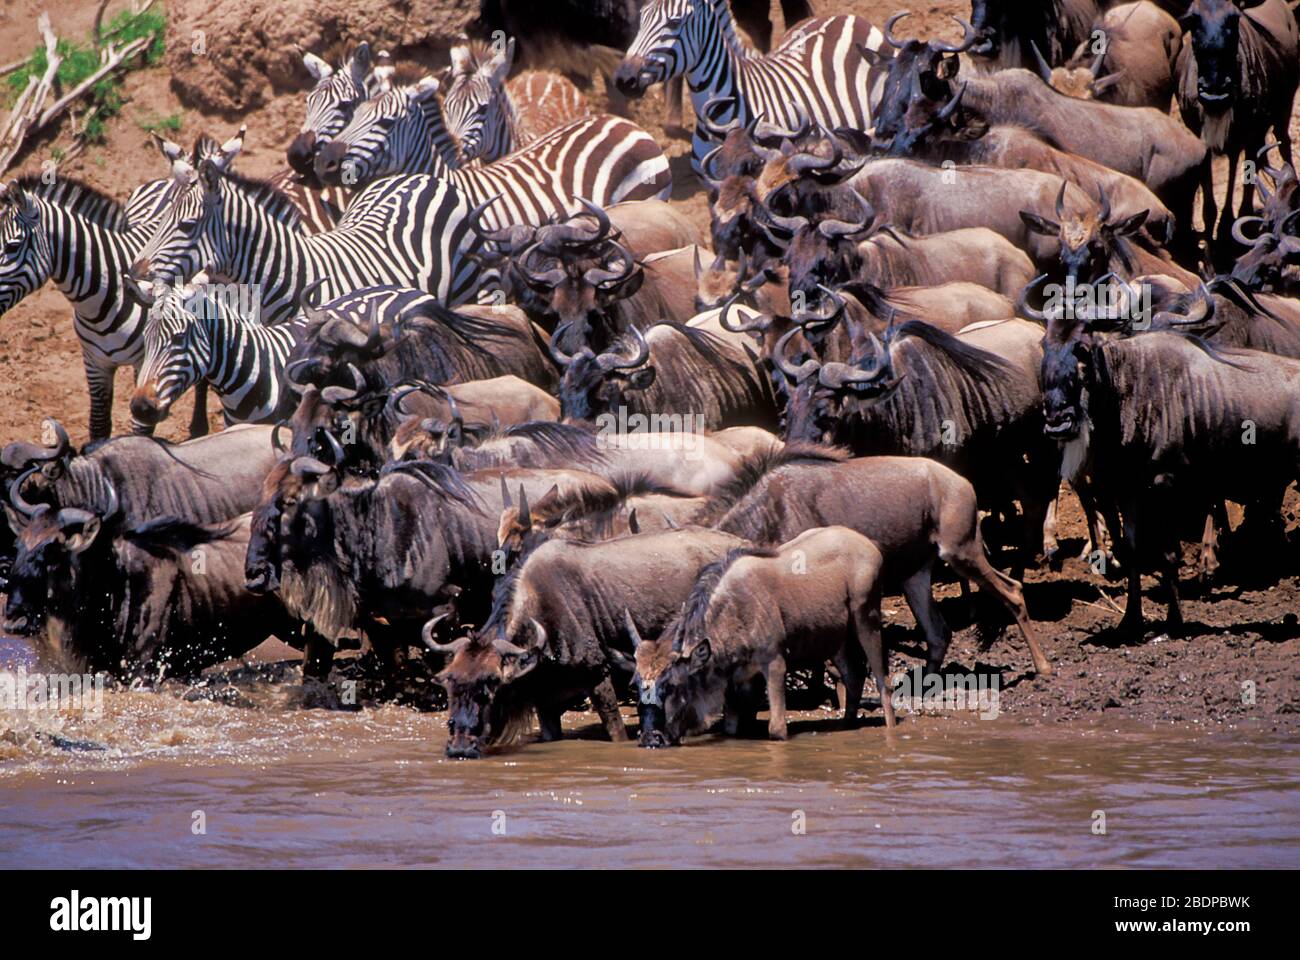 Plains or Common Zebra, Equus quagga, formerly Equus burchellii, and Wildebeeste or Gnu, Connochaetes taurinus, migration crossing river, Masai Mara, Stock Photo